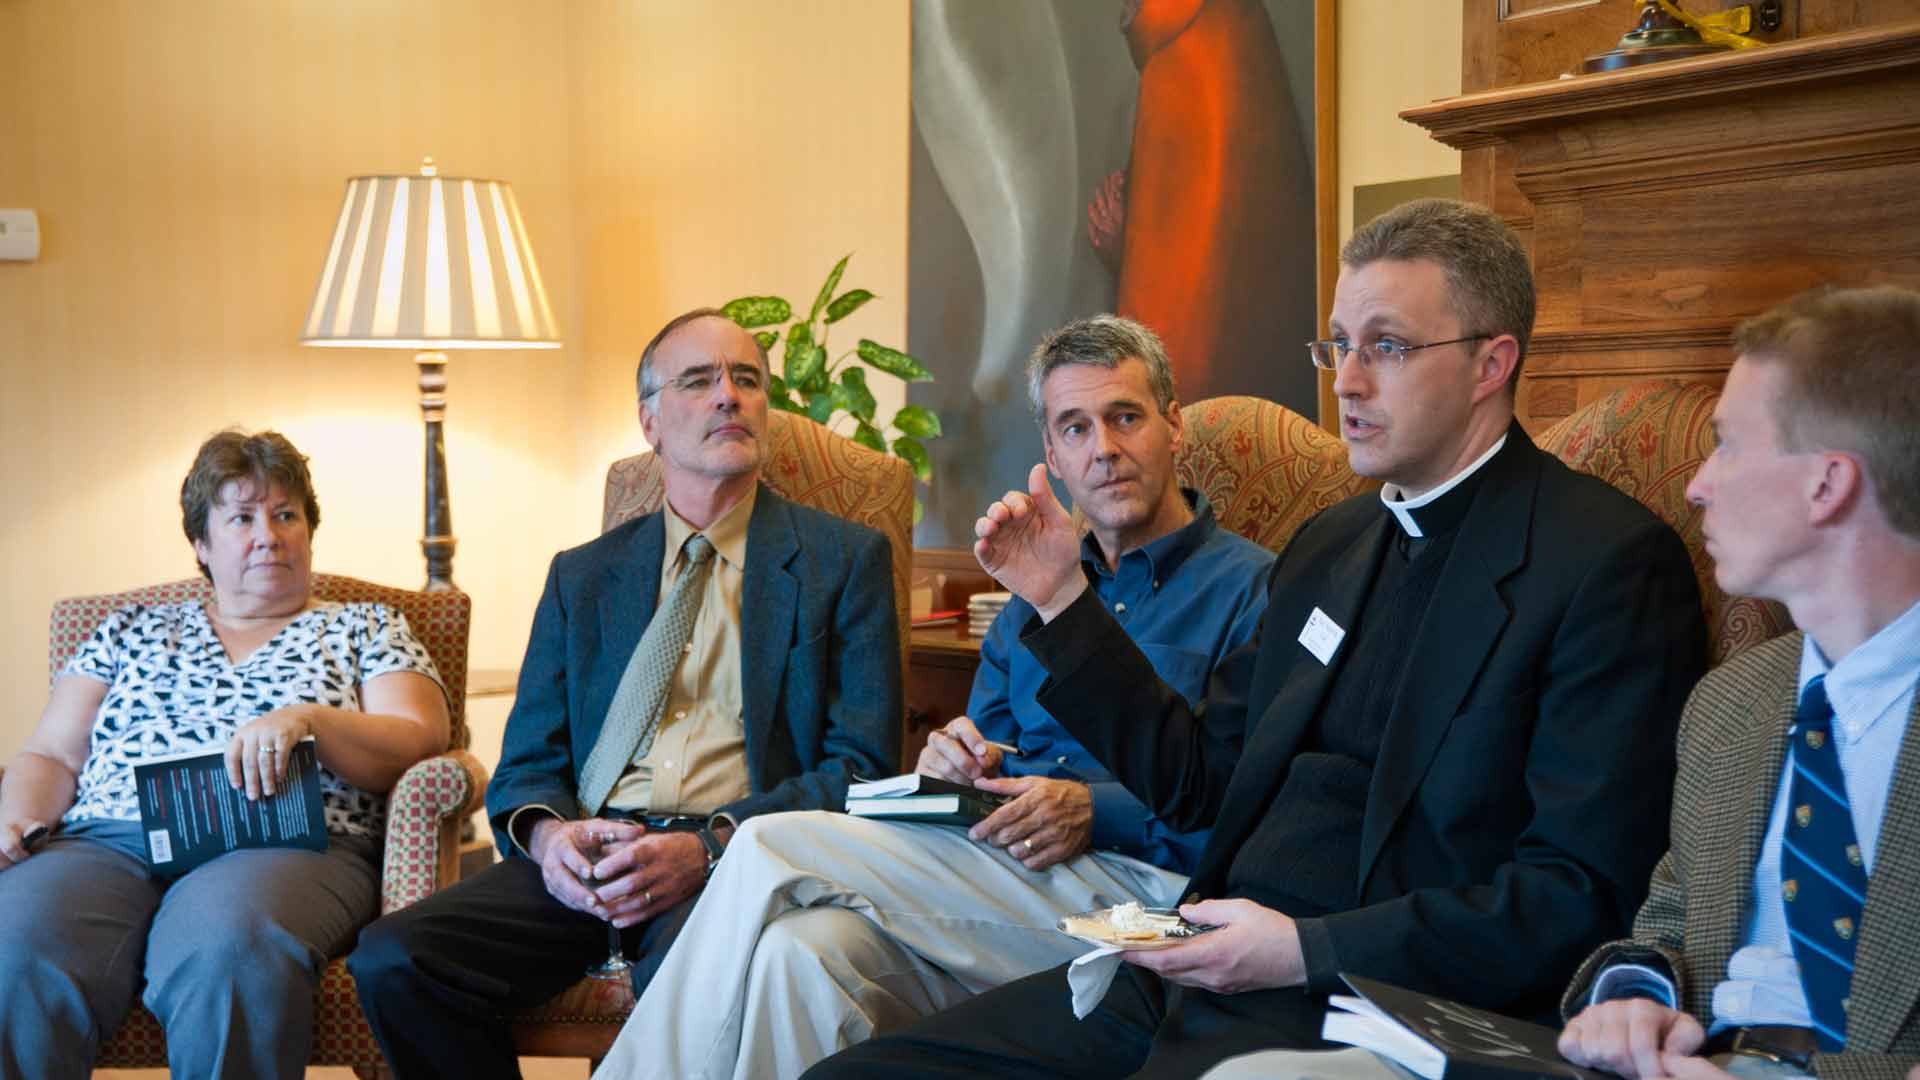 Priest speaking to group of staff members